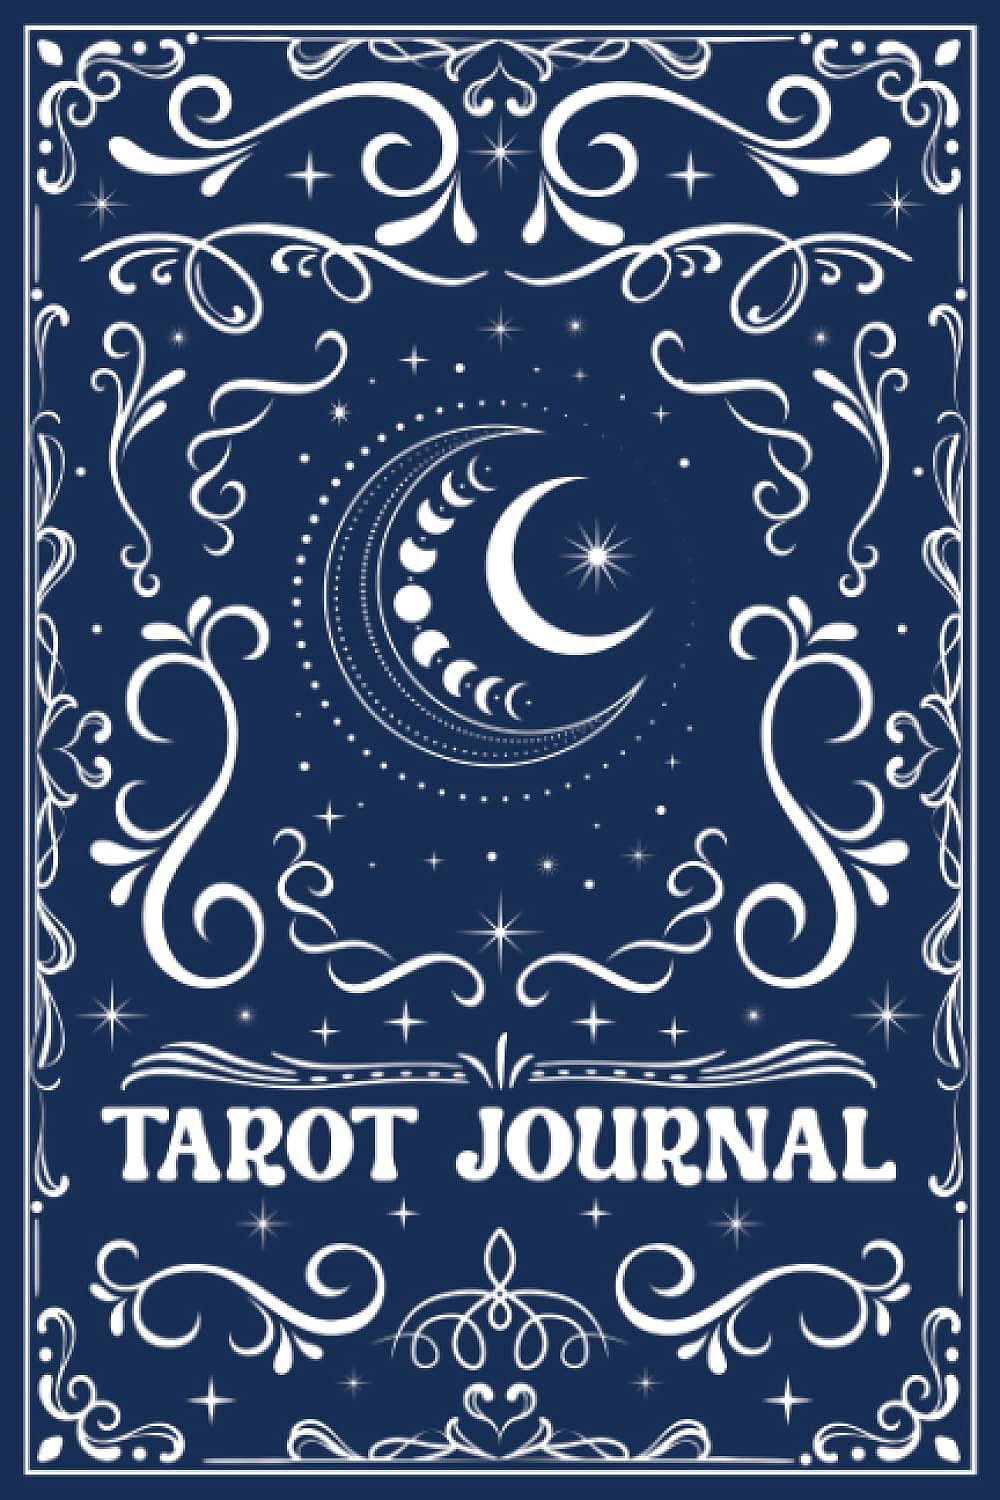 タロットジャーナル ３枚用【ムーンサイクル】 Tarot journal for 3 cards Moon cycle / オラクルカード 占い カード占い Independently